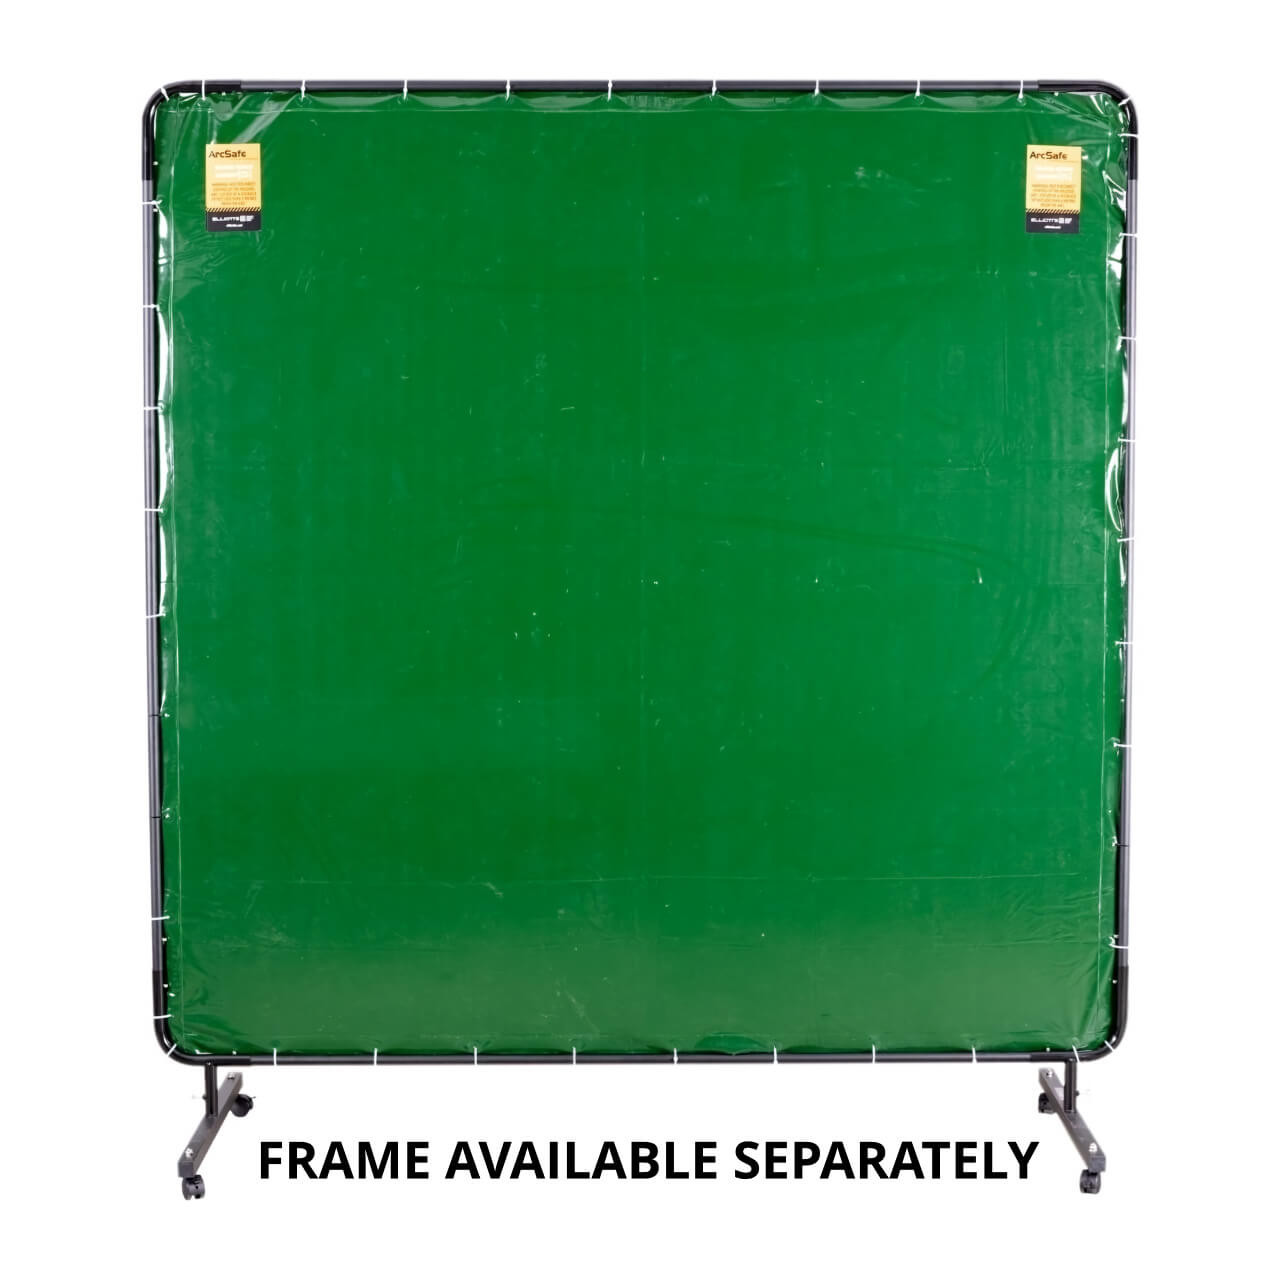 Arcsafe Welding Screen 1.8m x 5.2m Green